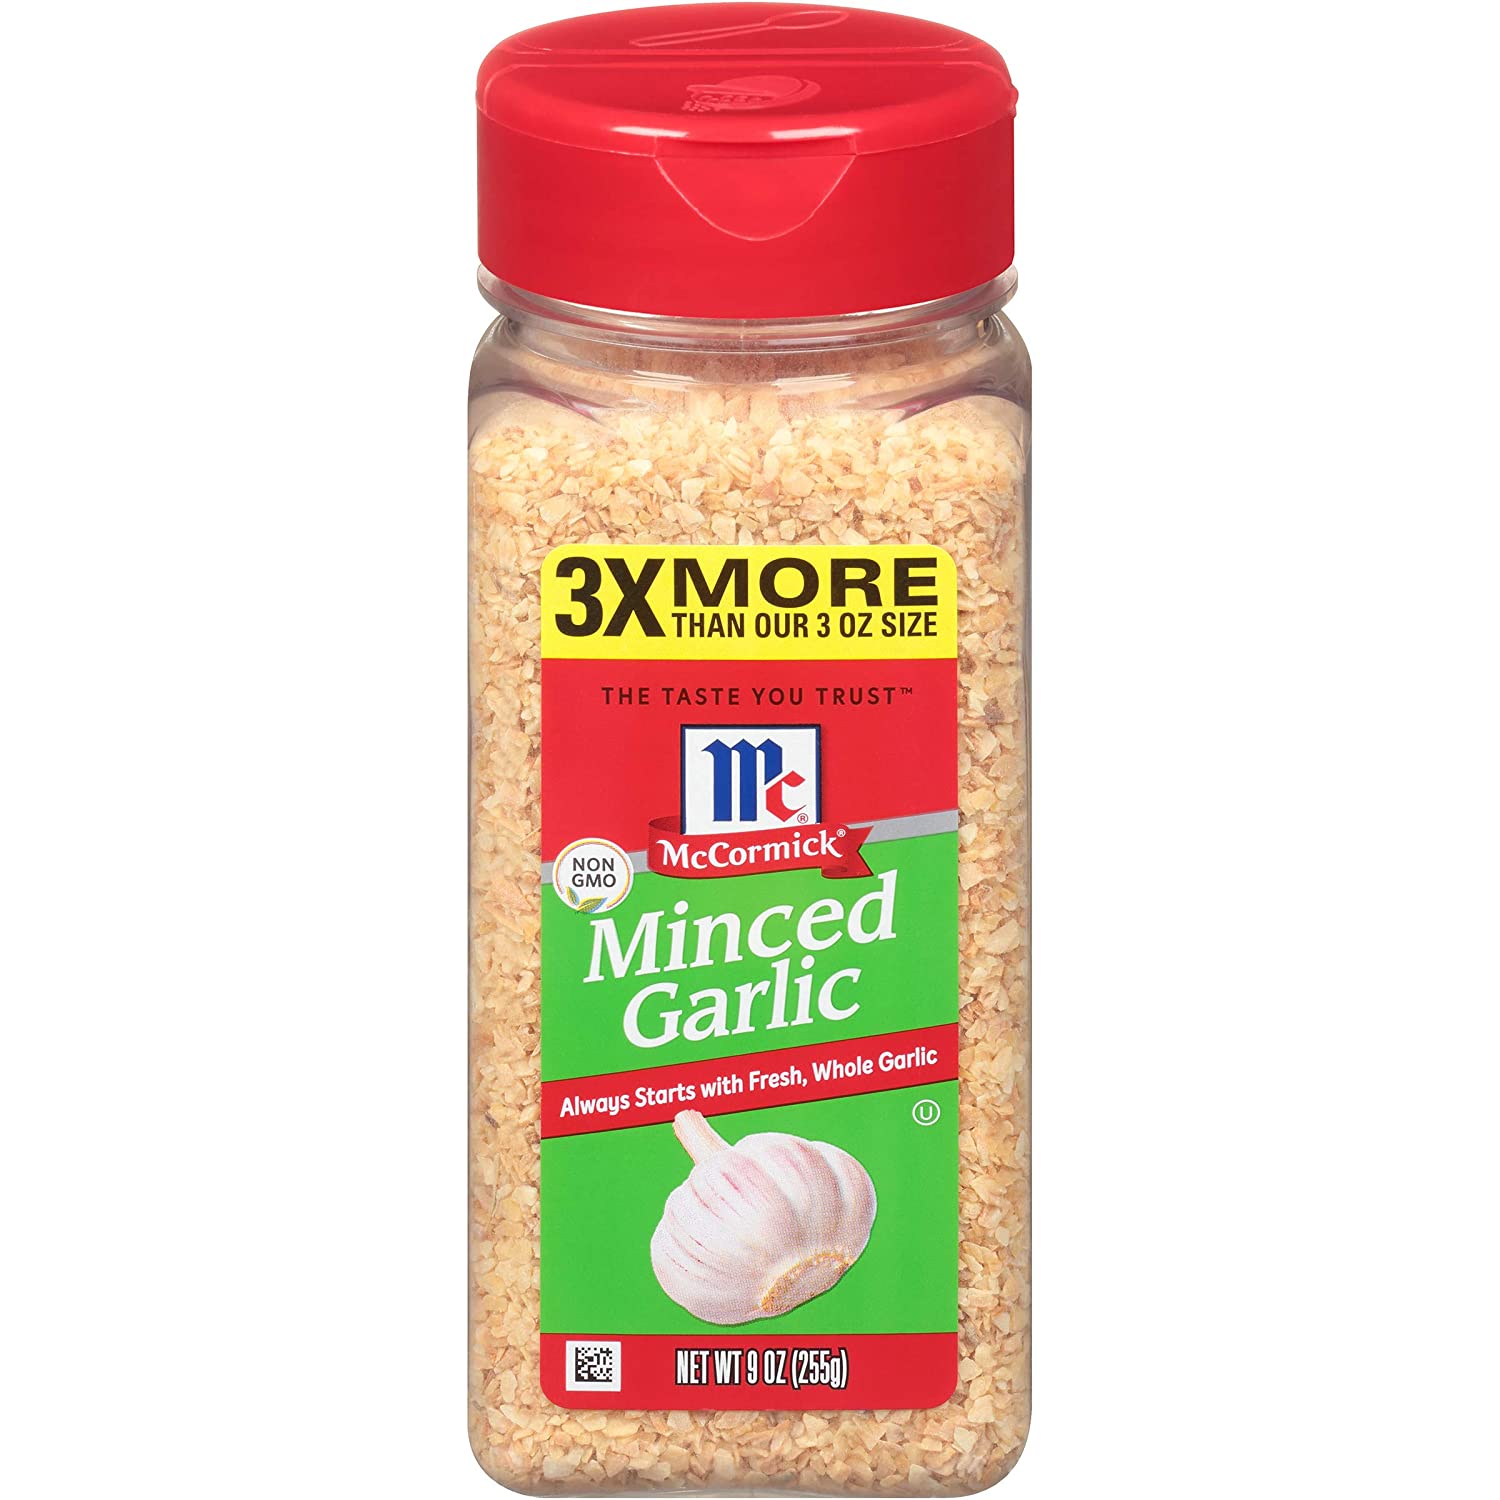 HCMTỎI BẰM McCormick Minced Garlic 255g 9oz NON-GMO